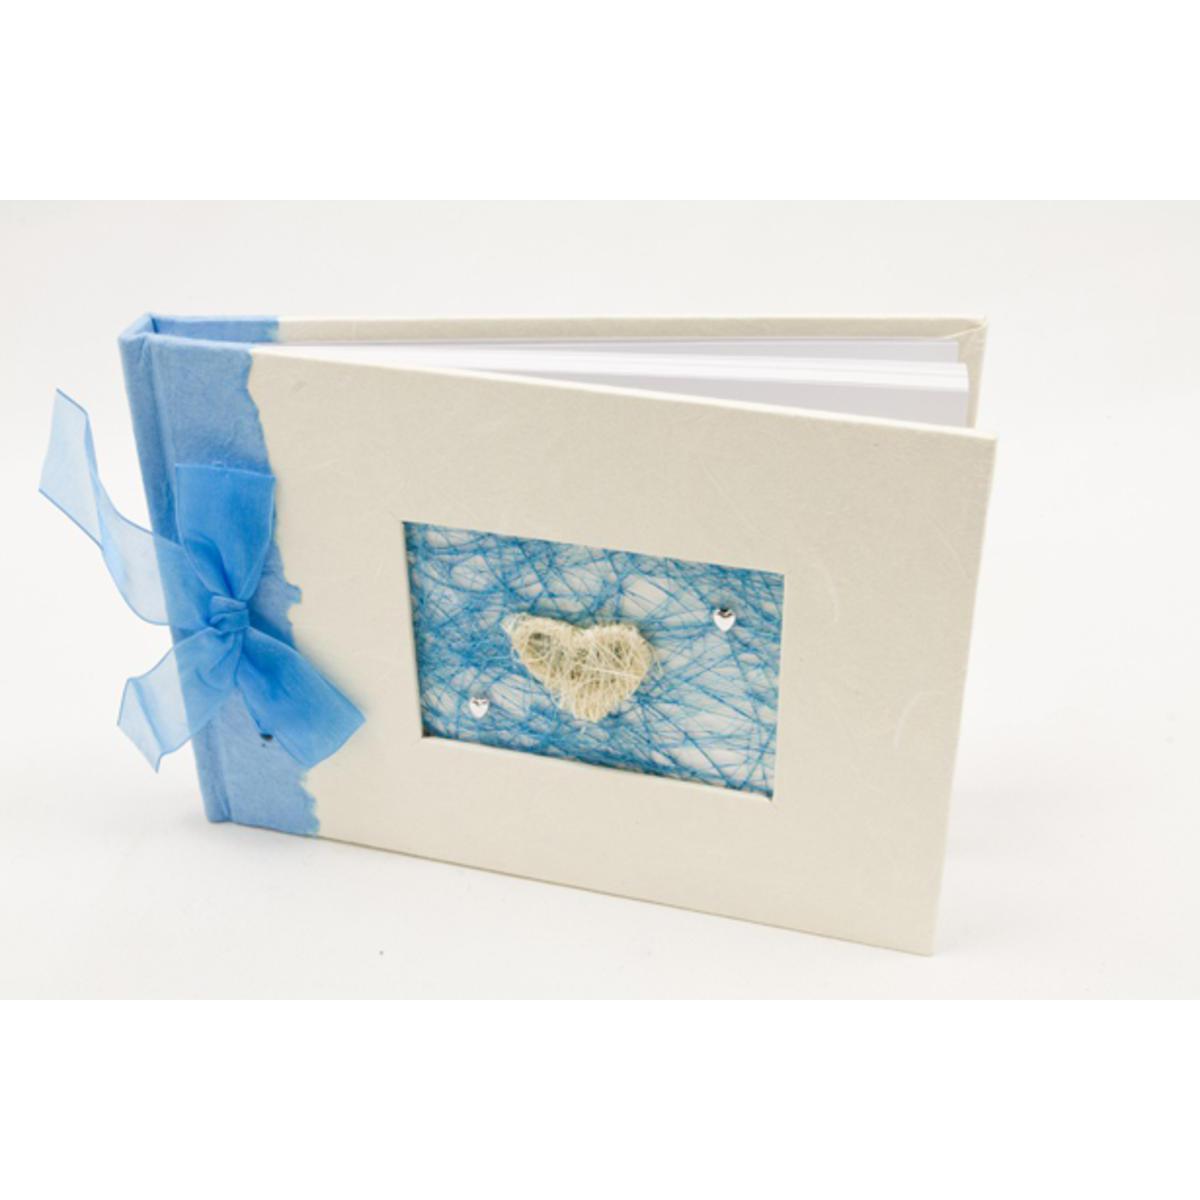 Livre d'or pour mariage forme Papillons - Papier et polyester - 21 x 15 cm - Turquoise